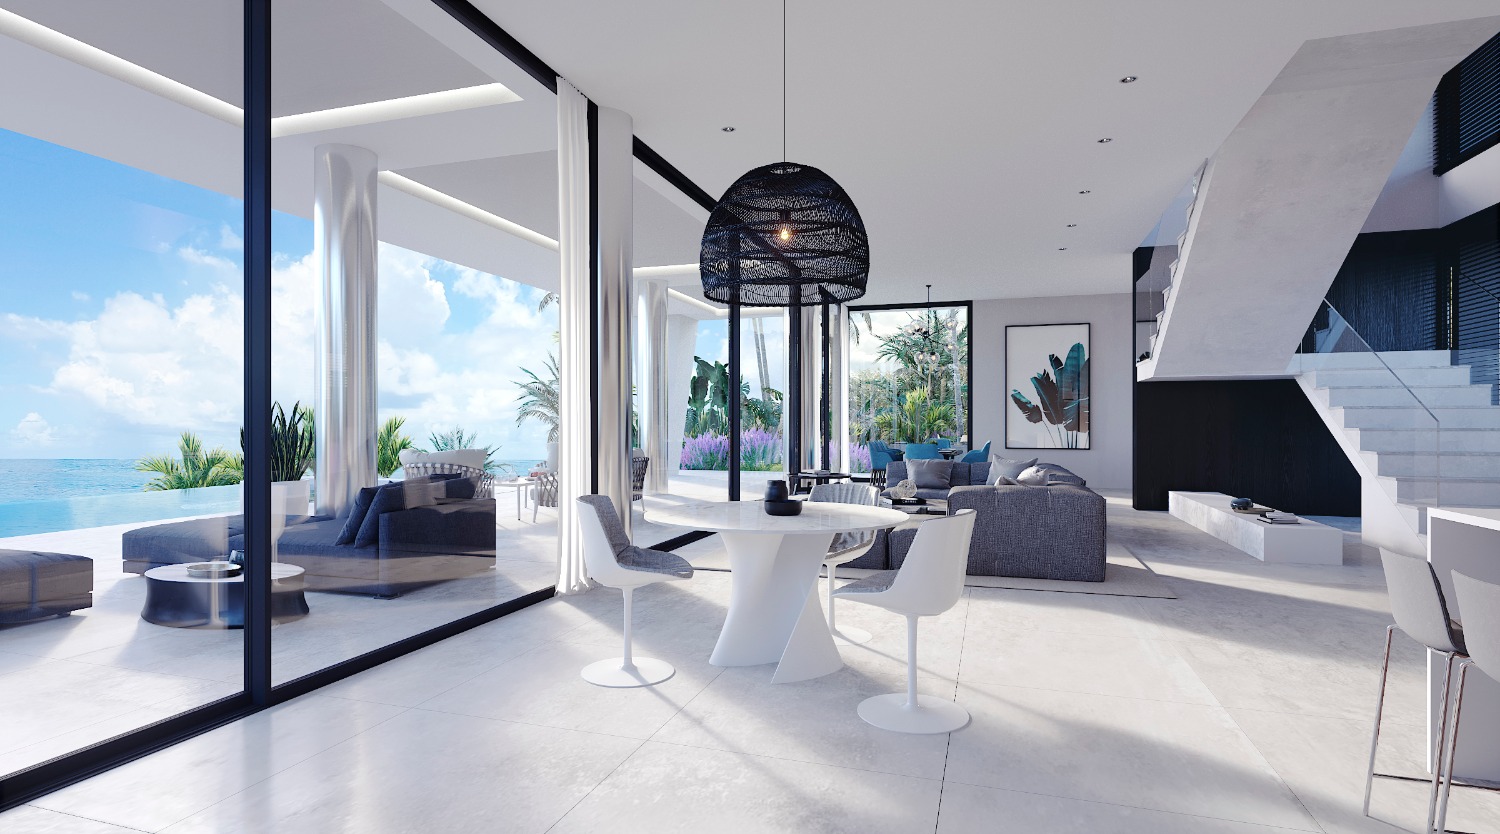 Des de 495.000. La teva nova i casa de luxe en 8 mesos. Reserva amb 20.000 euros i paga mensualment.